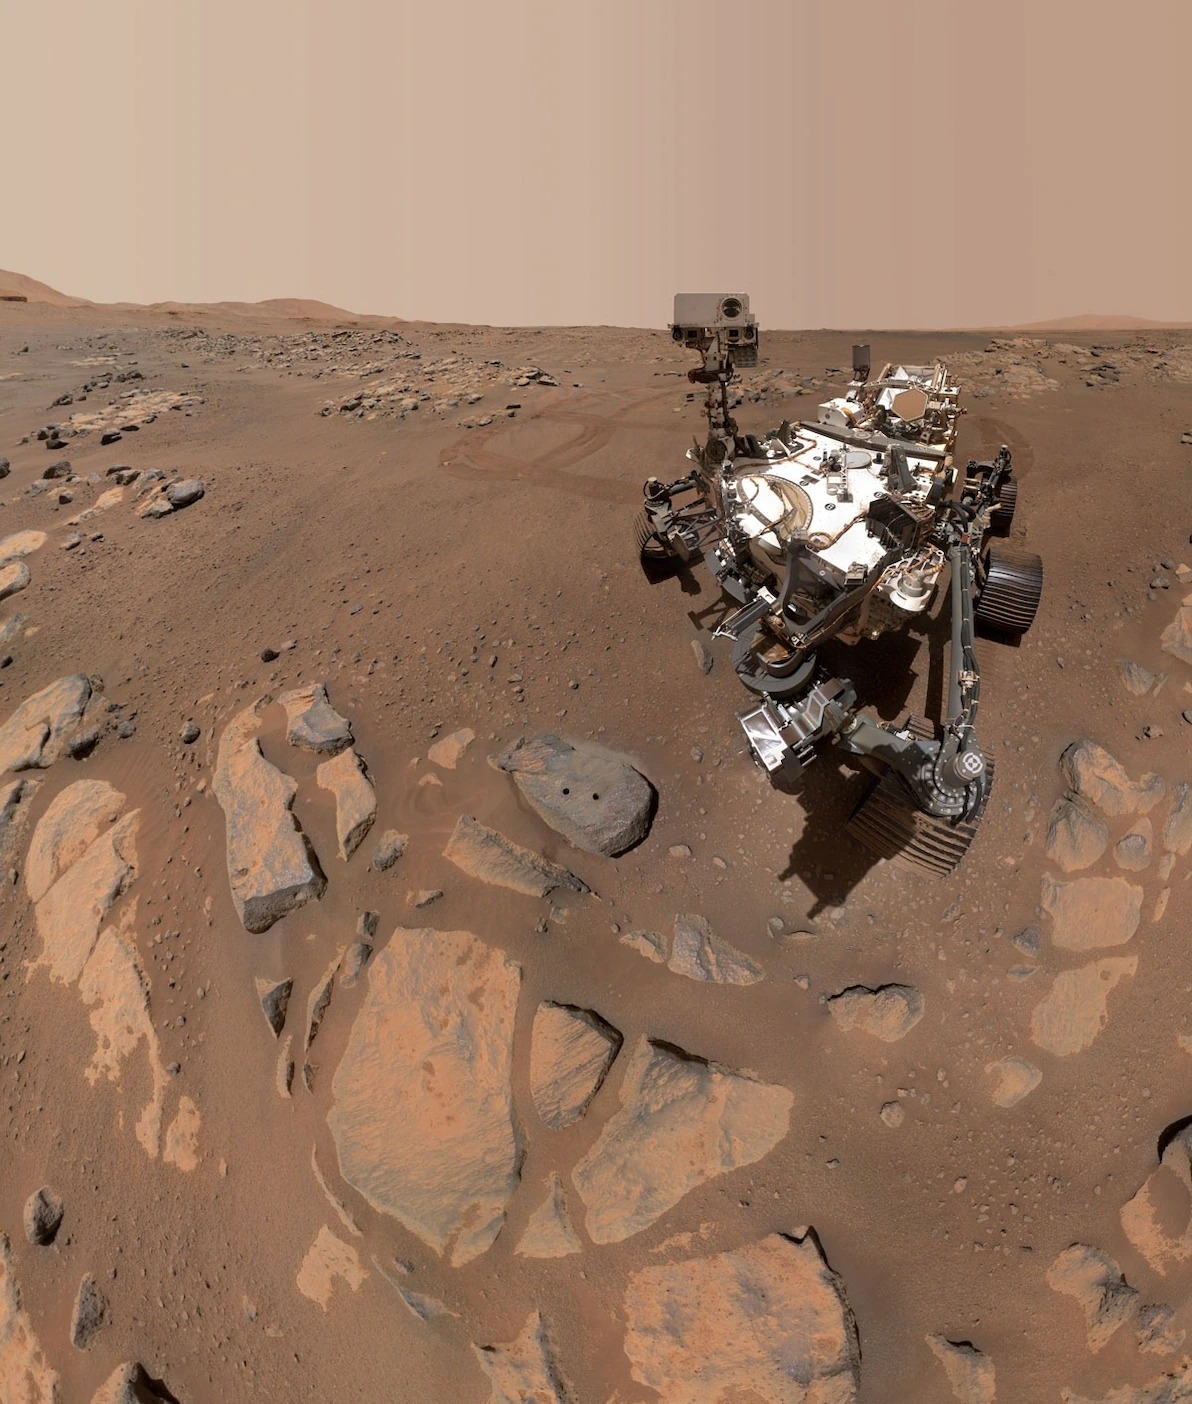 2021年9月10，美国航太总署毅力号火星探测车任务的第198个火星日，它在一块名为「罗切特」（Rochette）的岩石上拍摄了这张自拍照。照片上还可以看到毅力